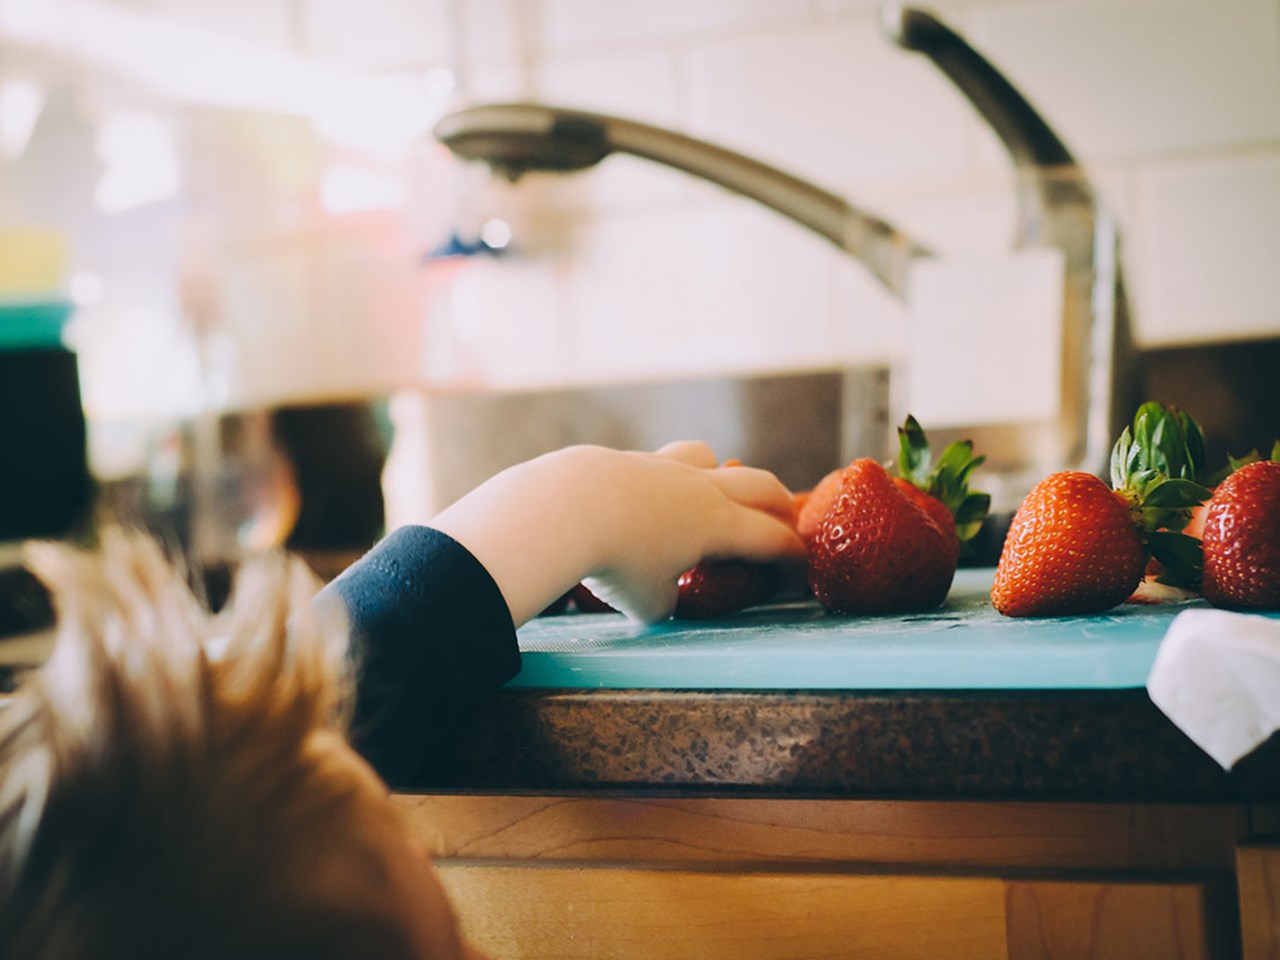 Rørleggerkjeden VB barn strekker seg etter jordbær på kjøkkenbenken